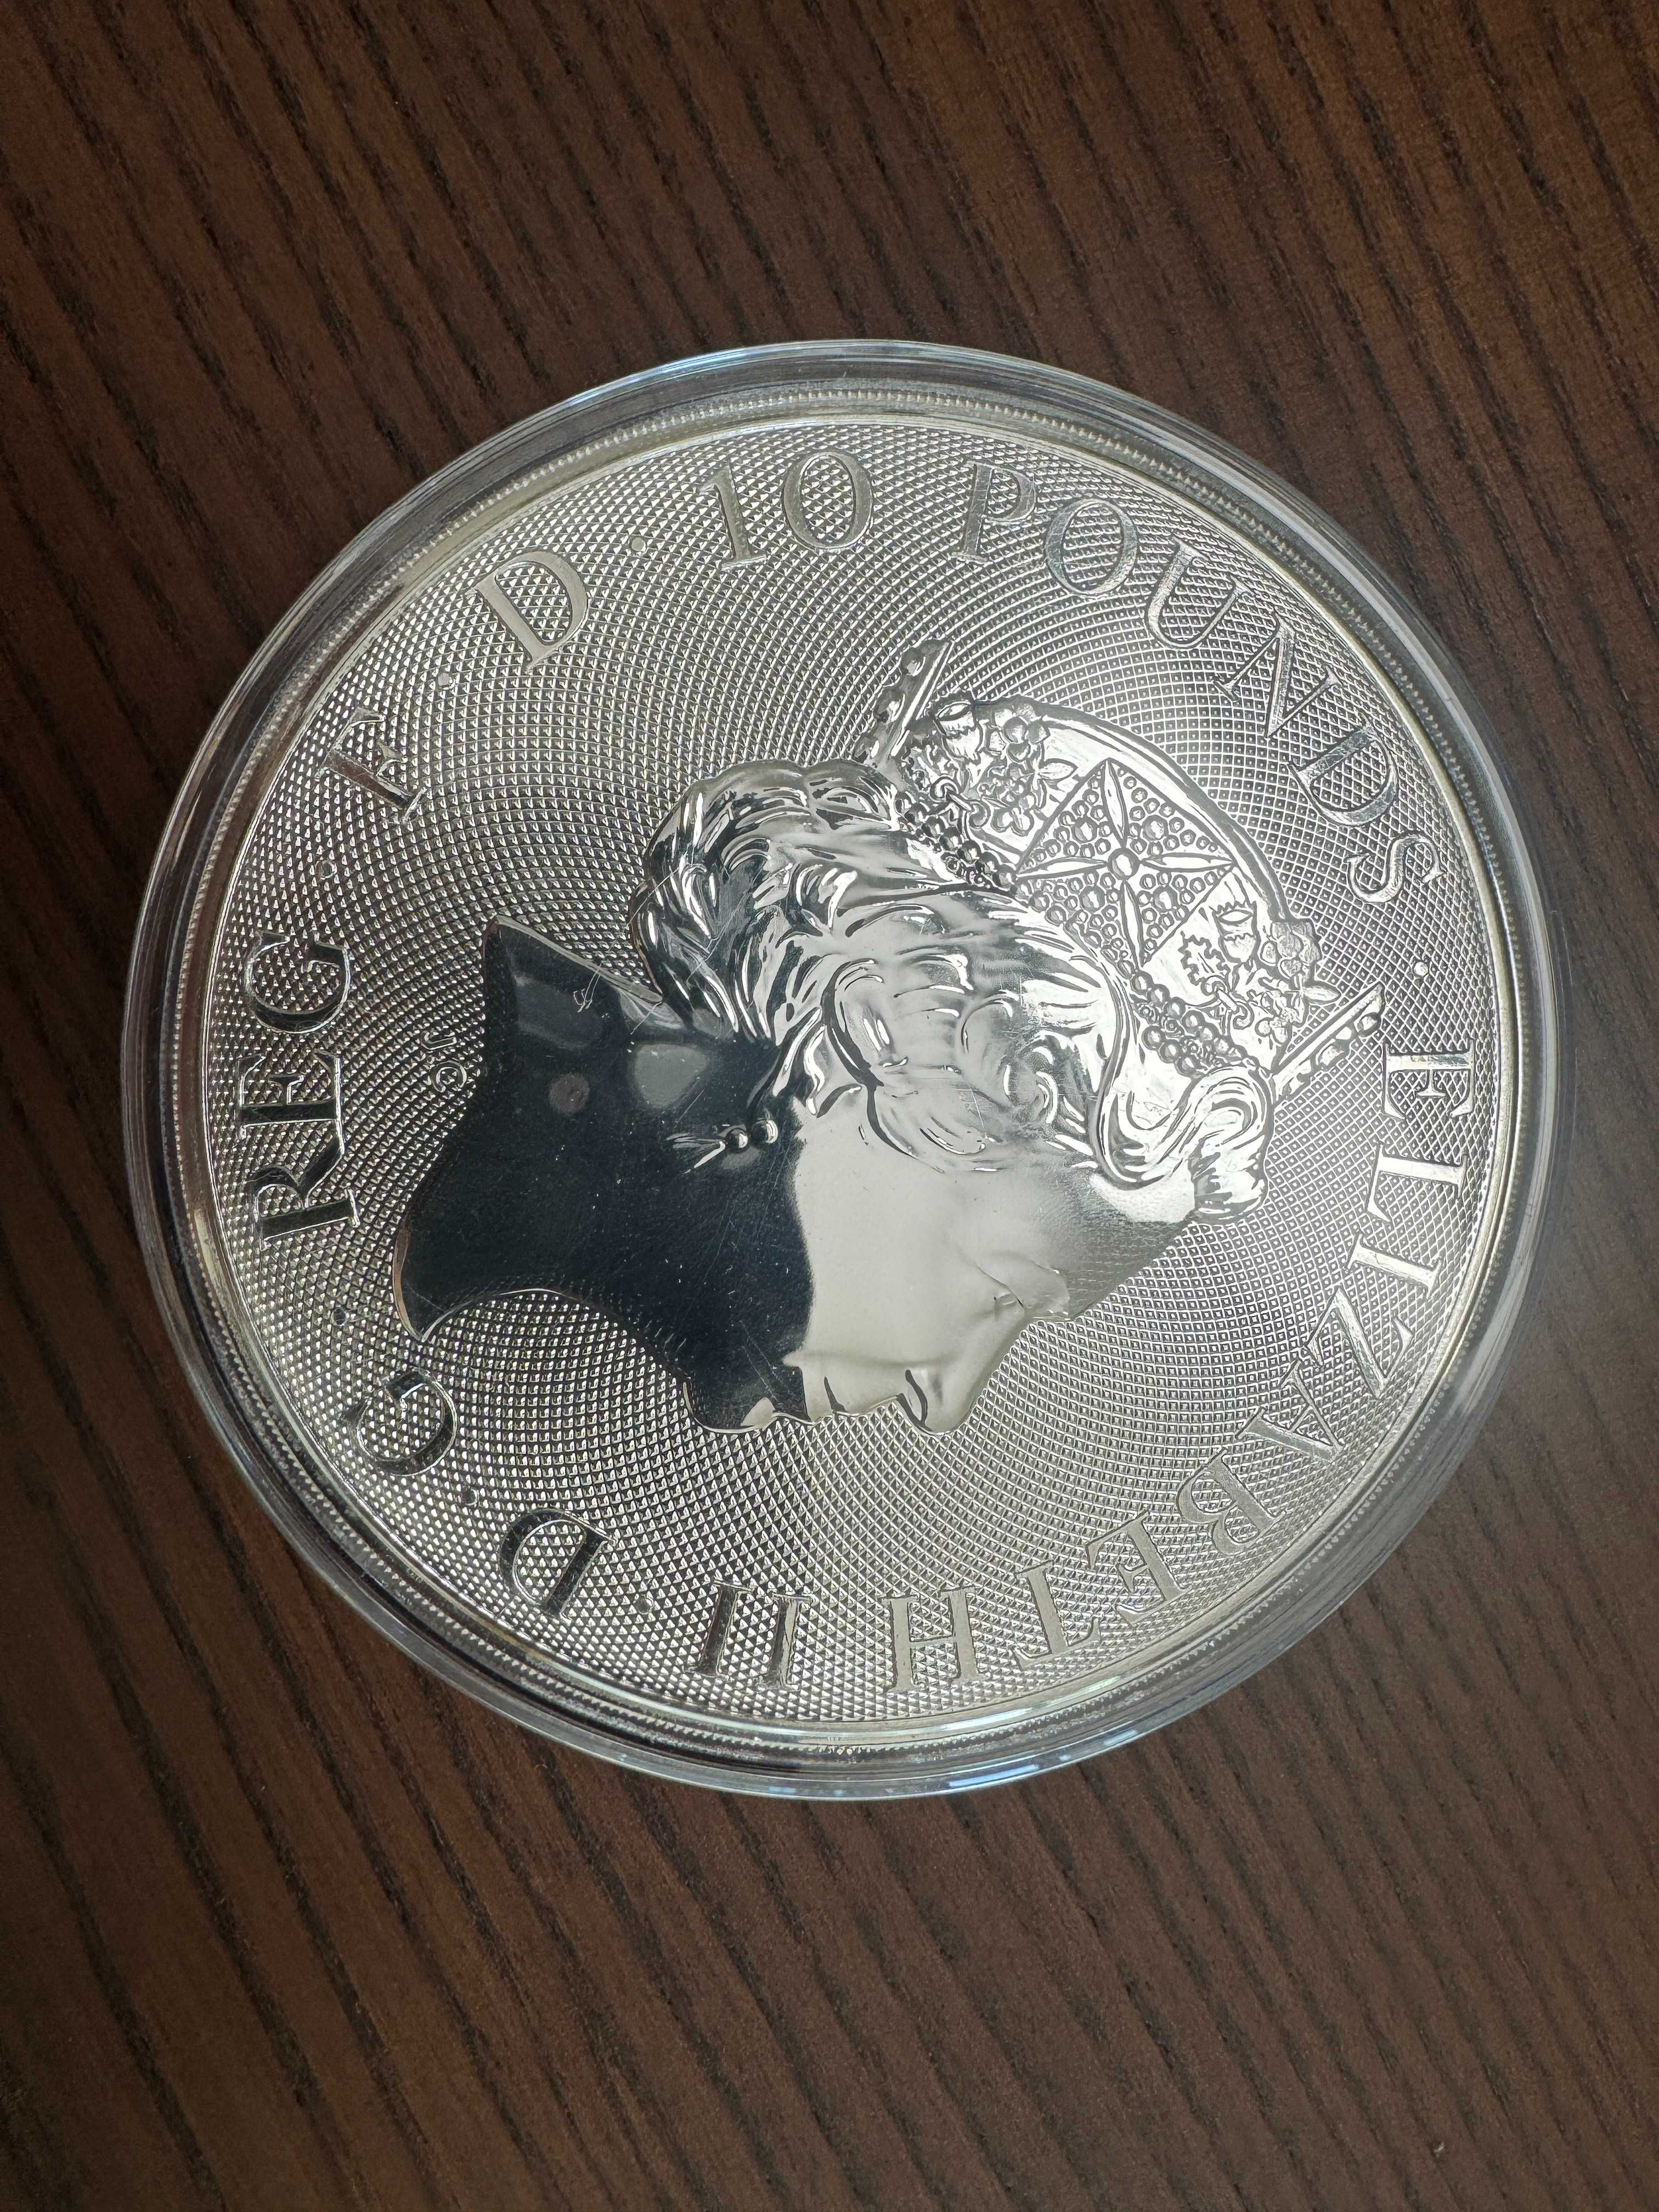 Vând monedă de argint White Horse, 2021, puritate 999.9%, încapsulată